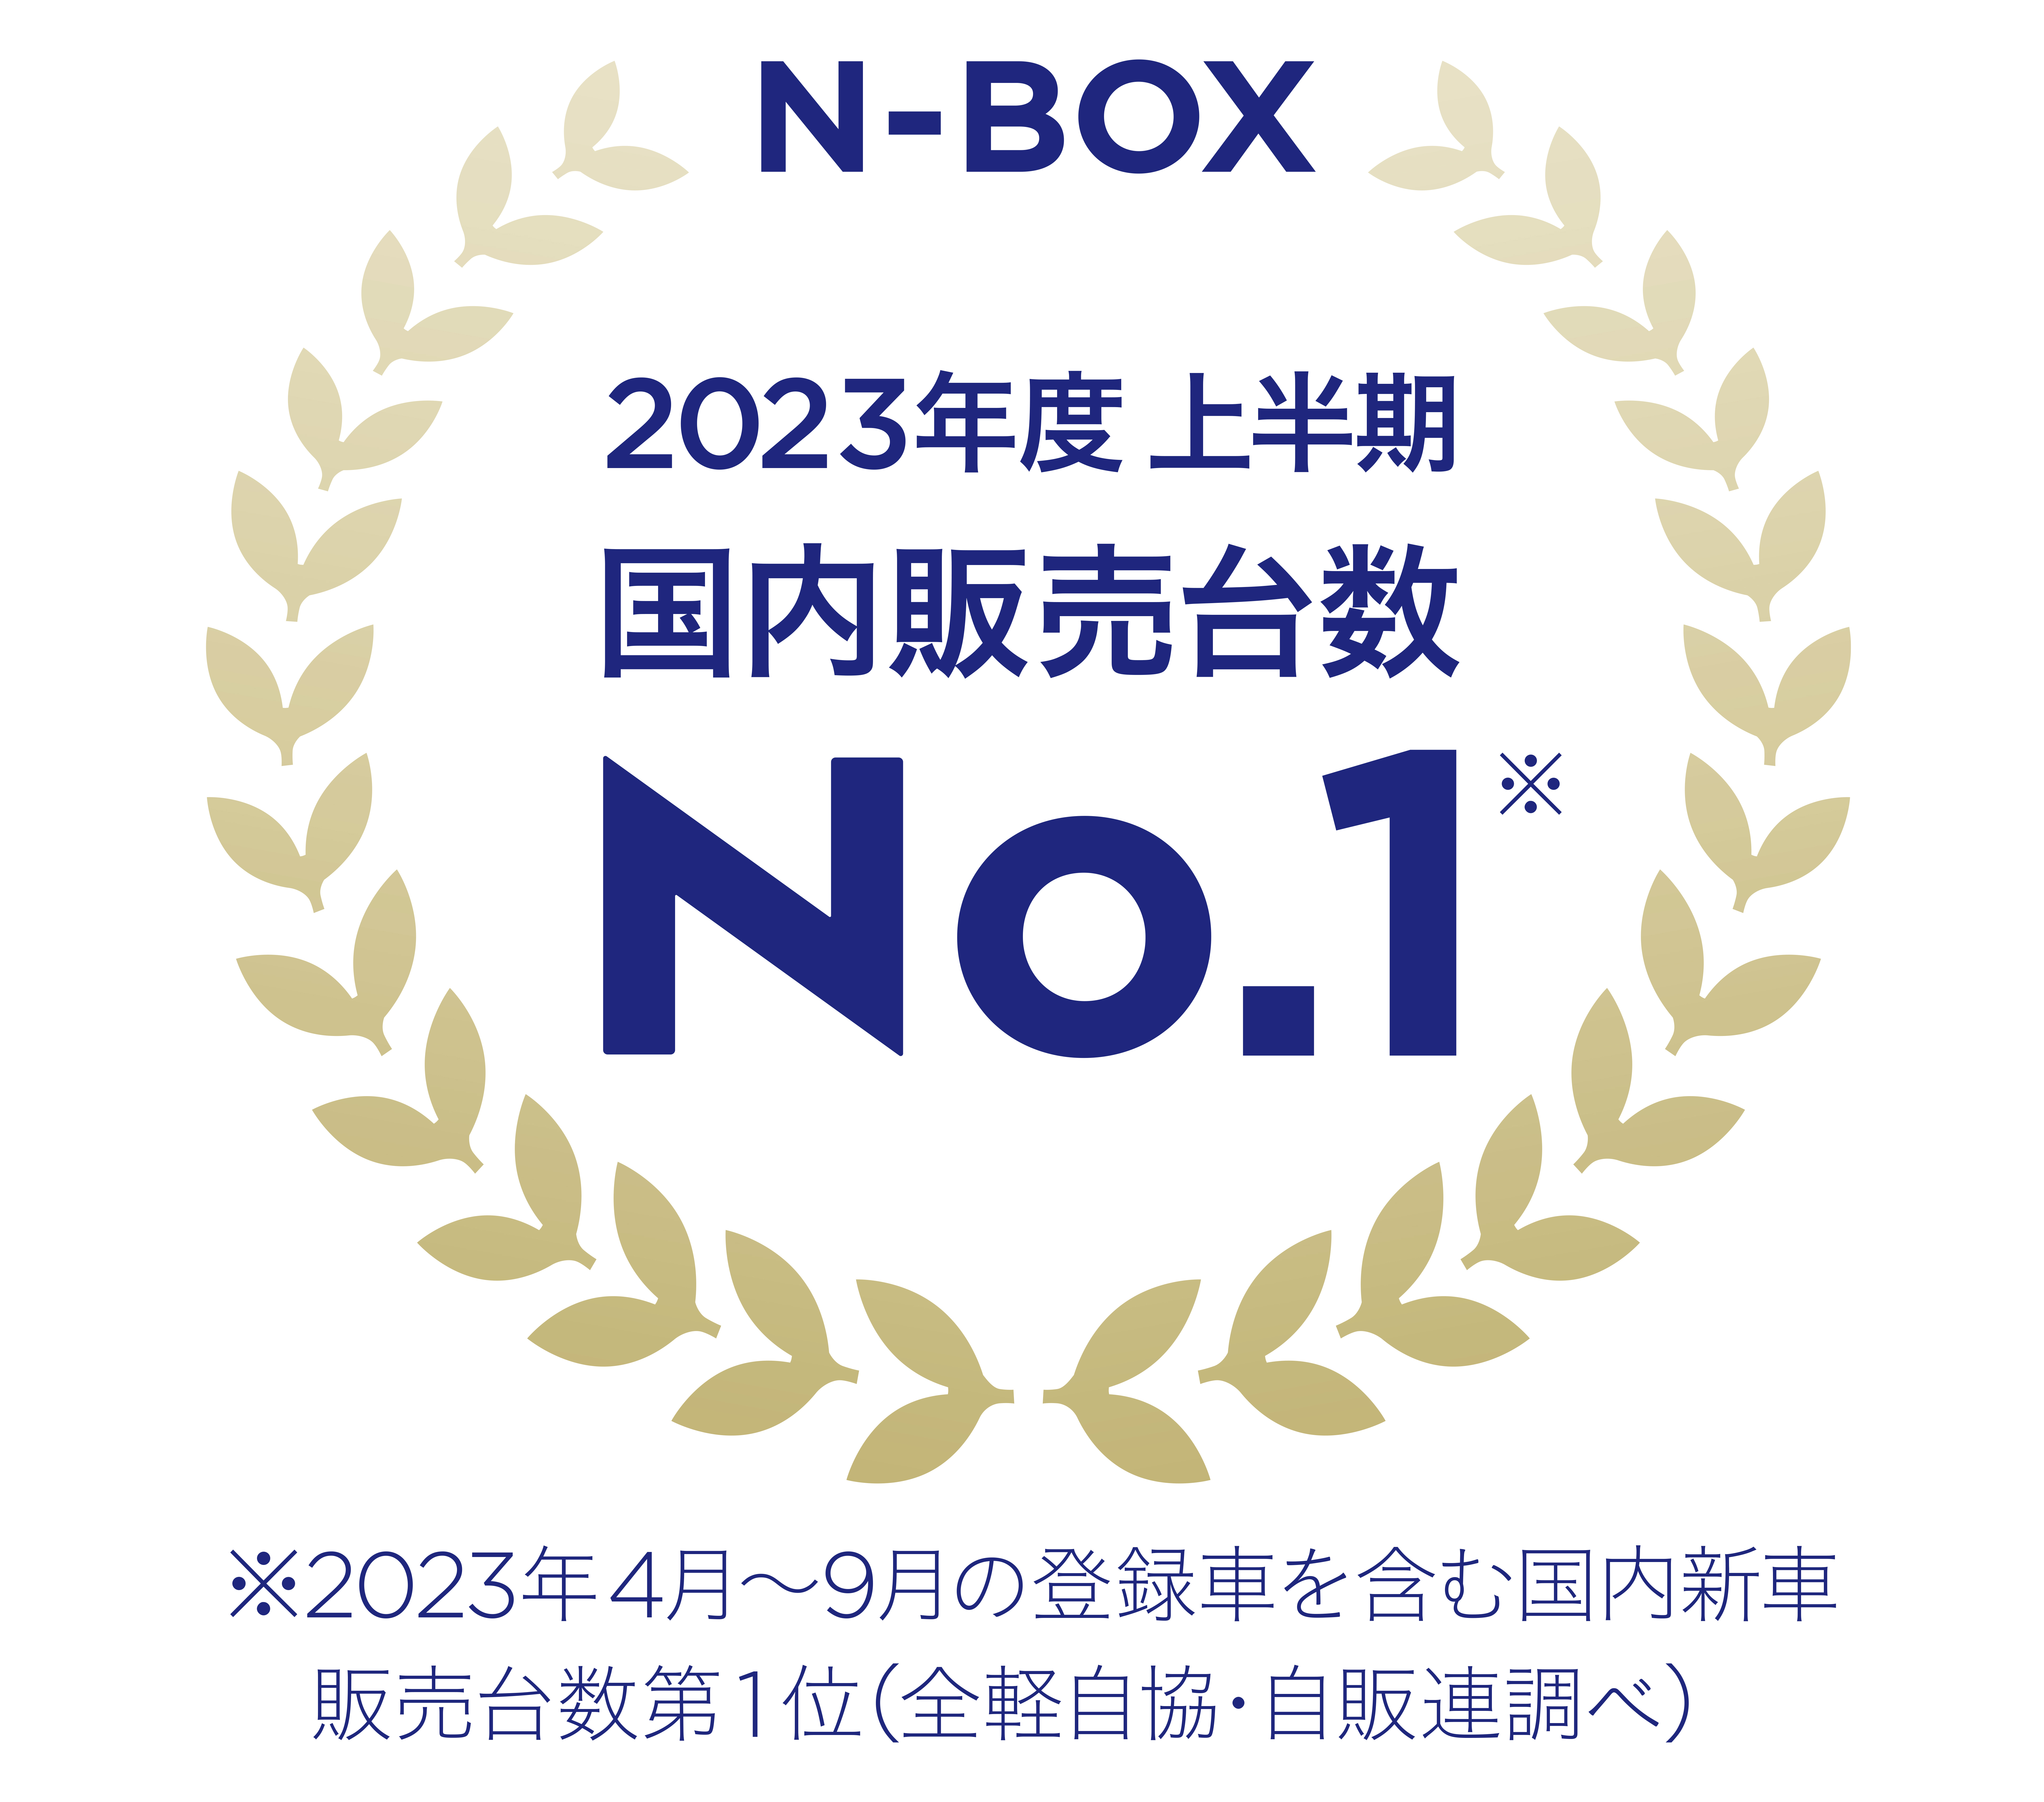 NBOX2023kamikiNo1